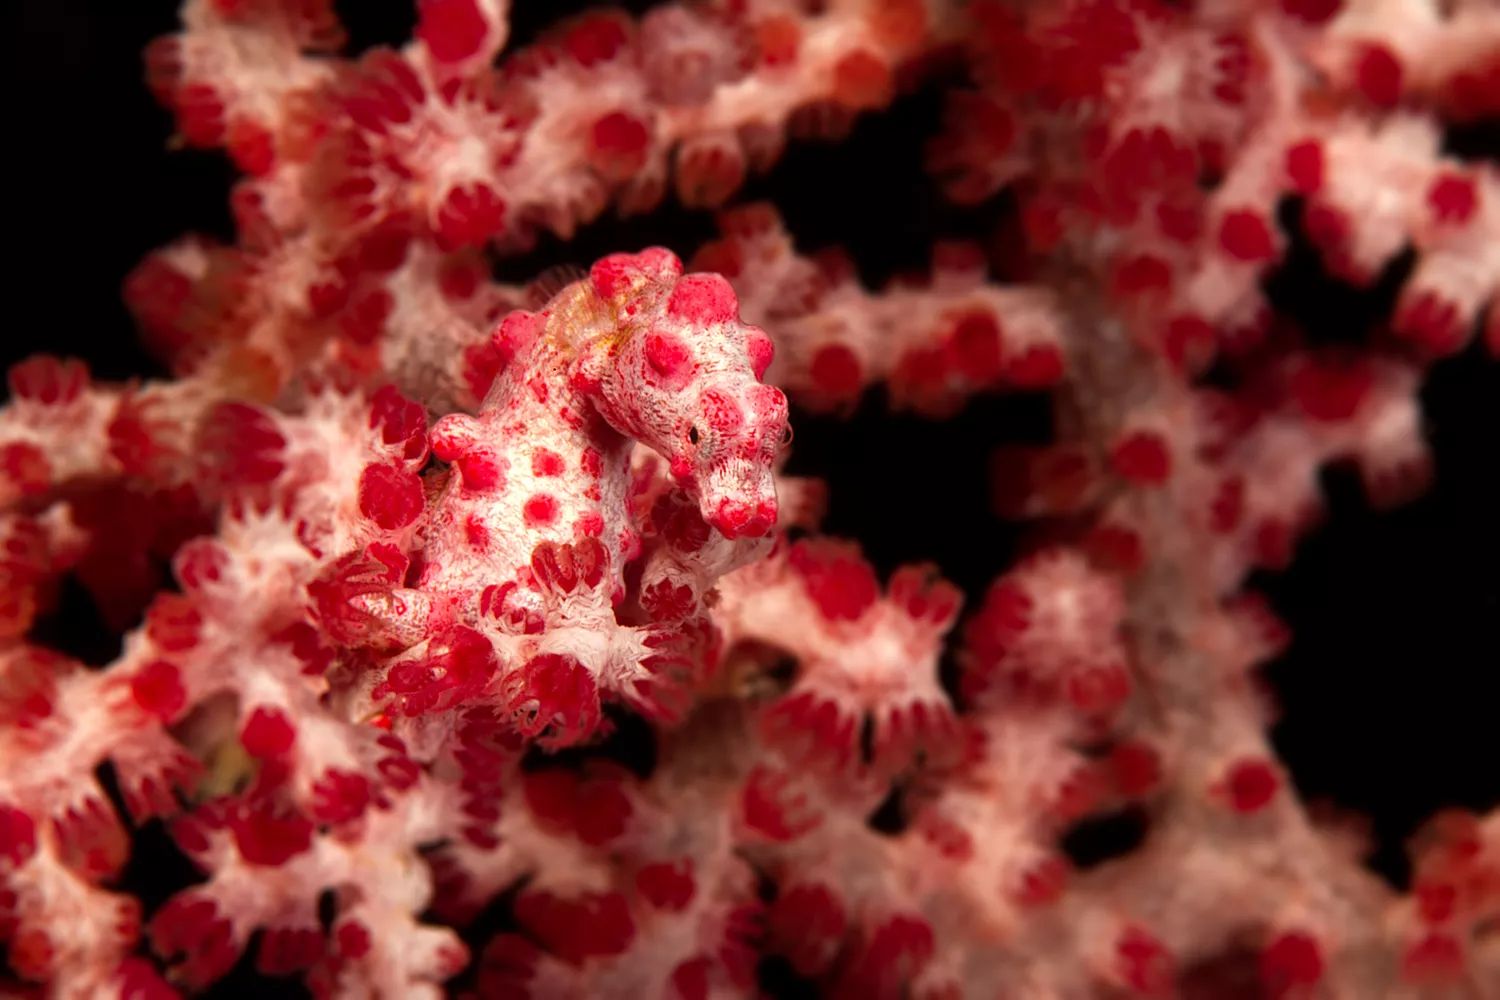 Карликовый морской конек сливается с красным мягким кораллом